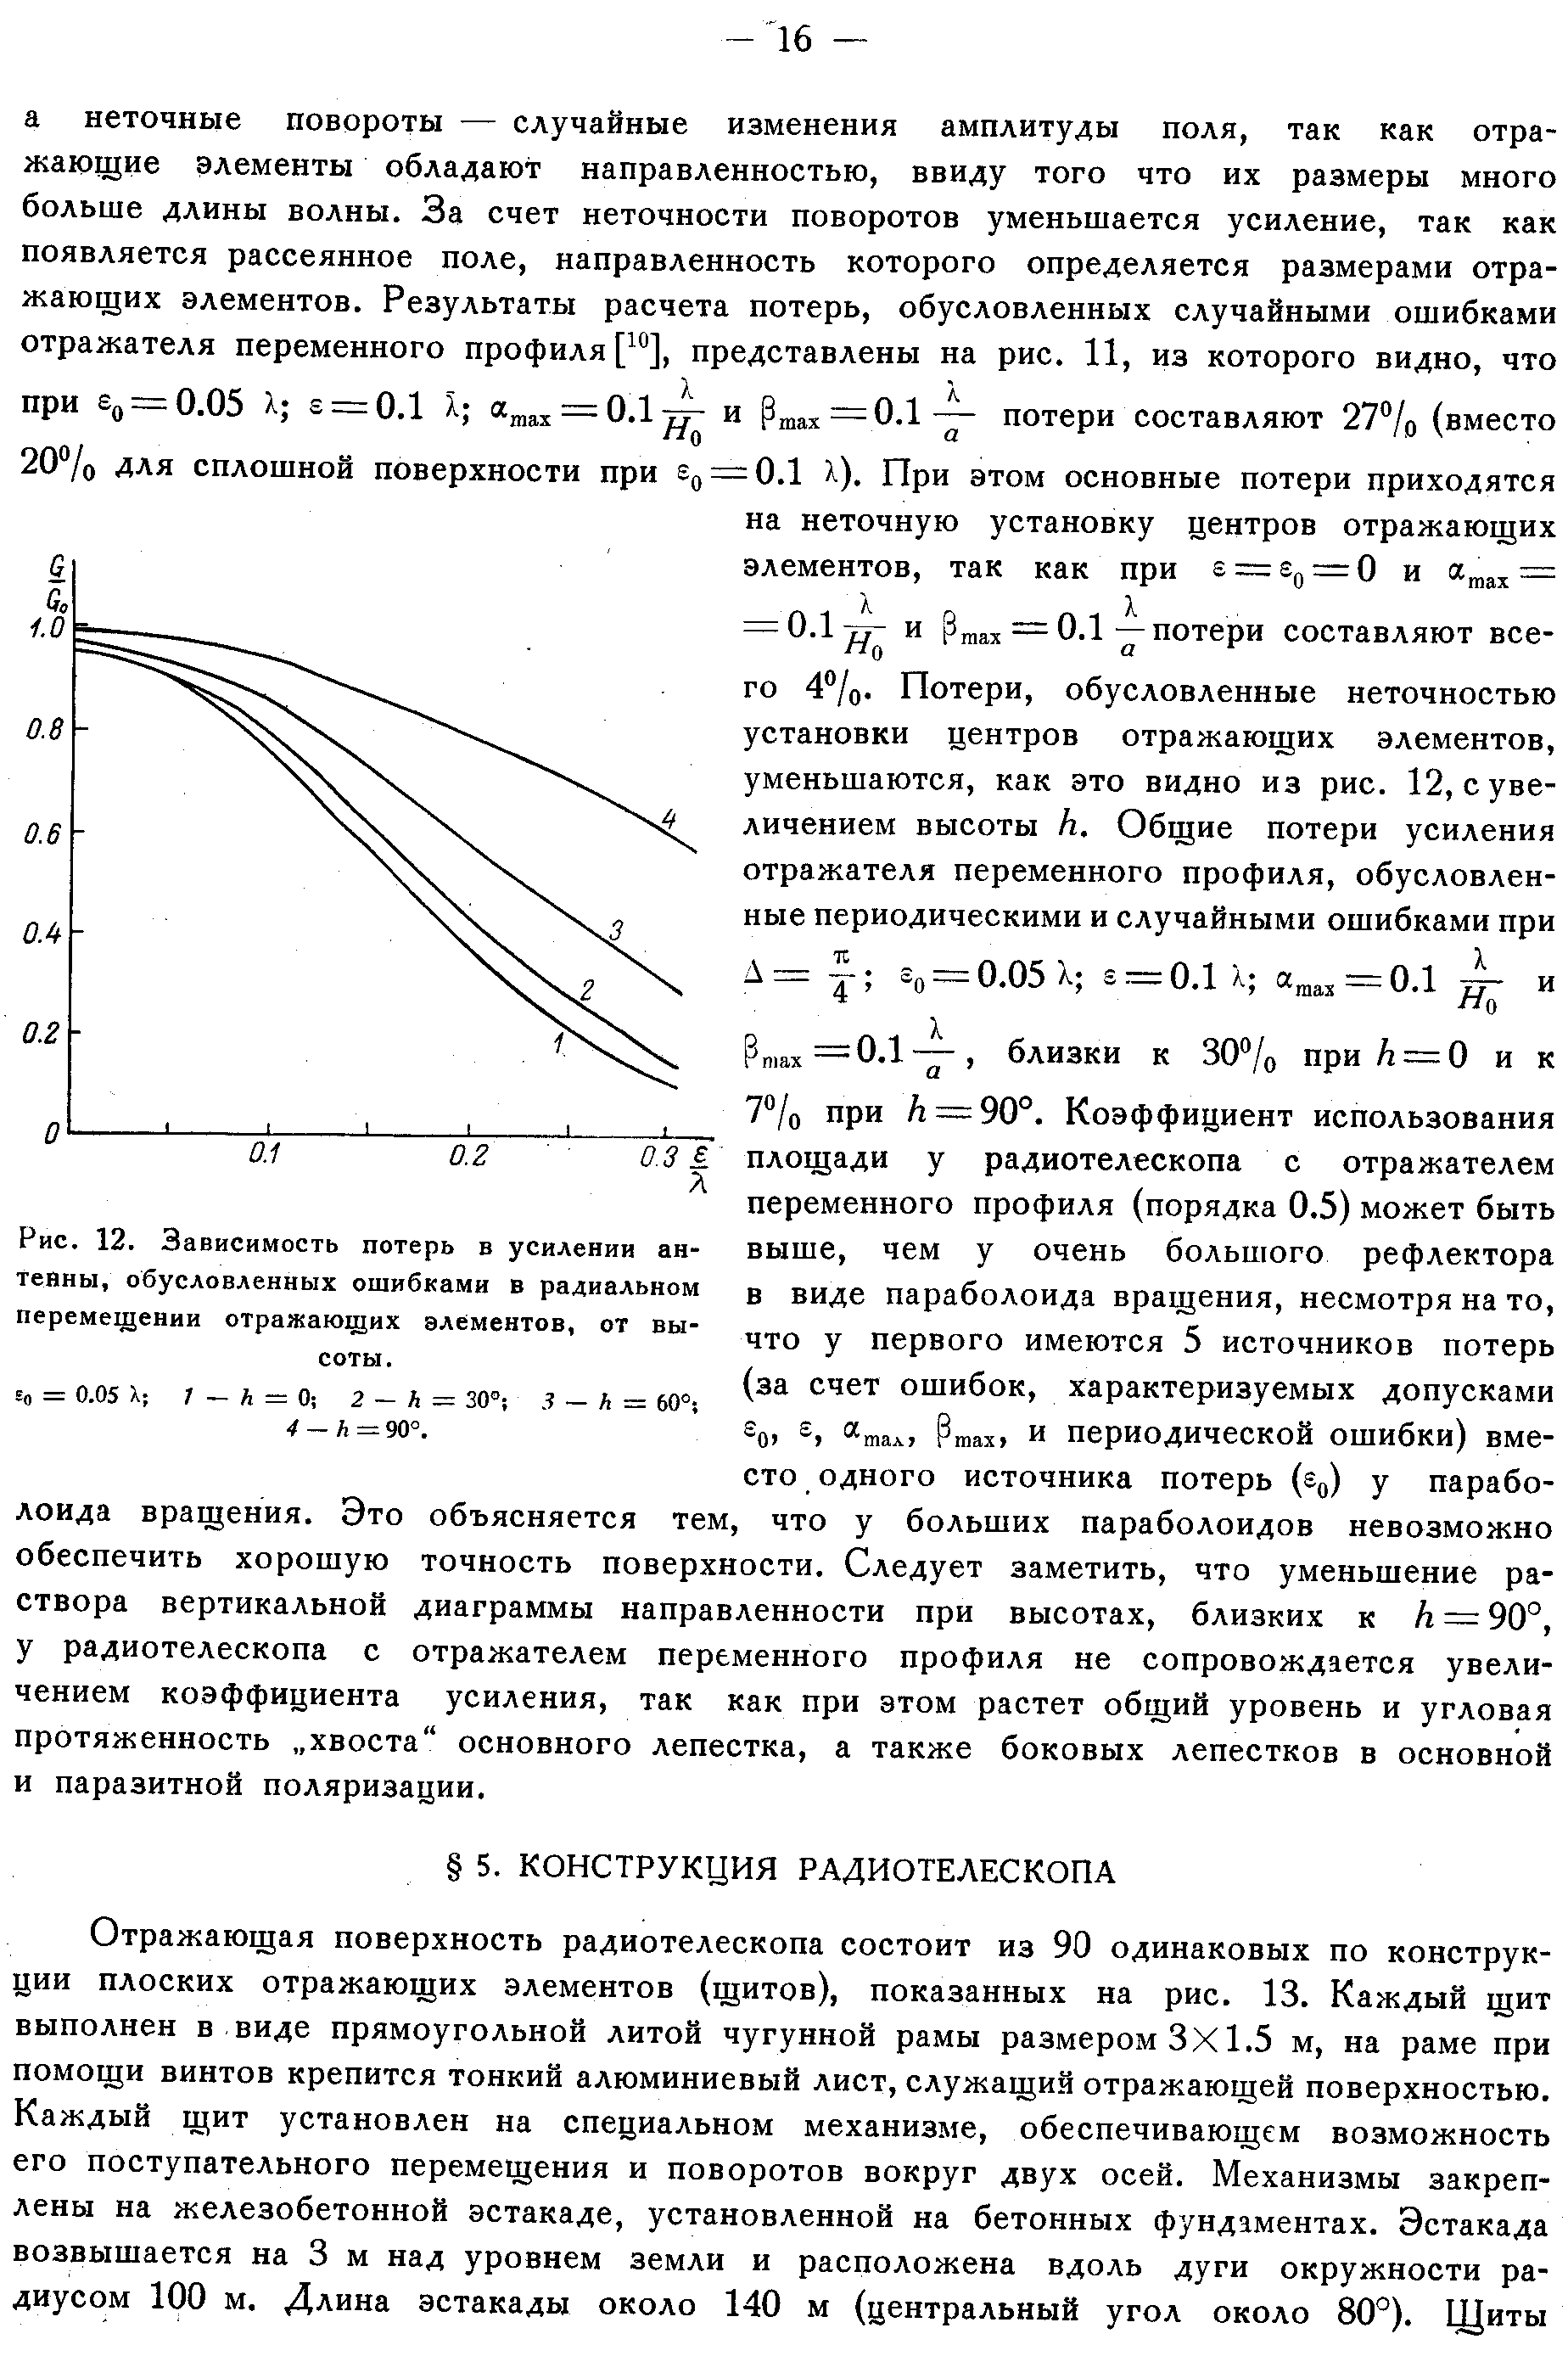 Хайкин С.Э. и др.,стр.14